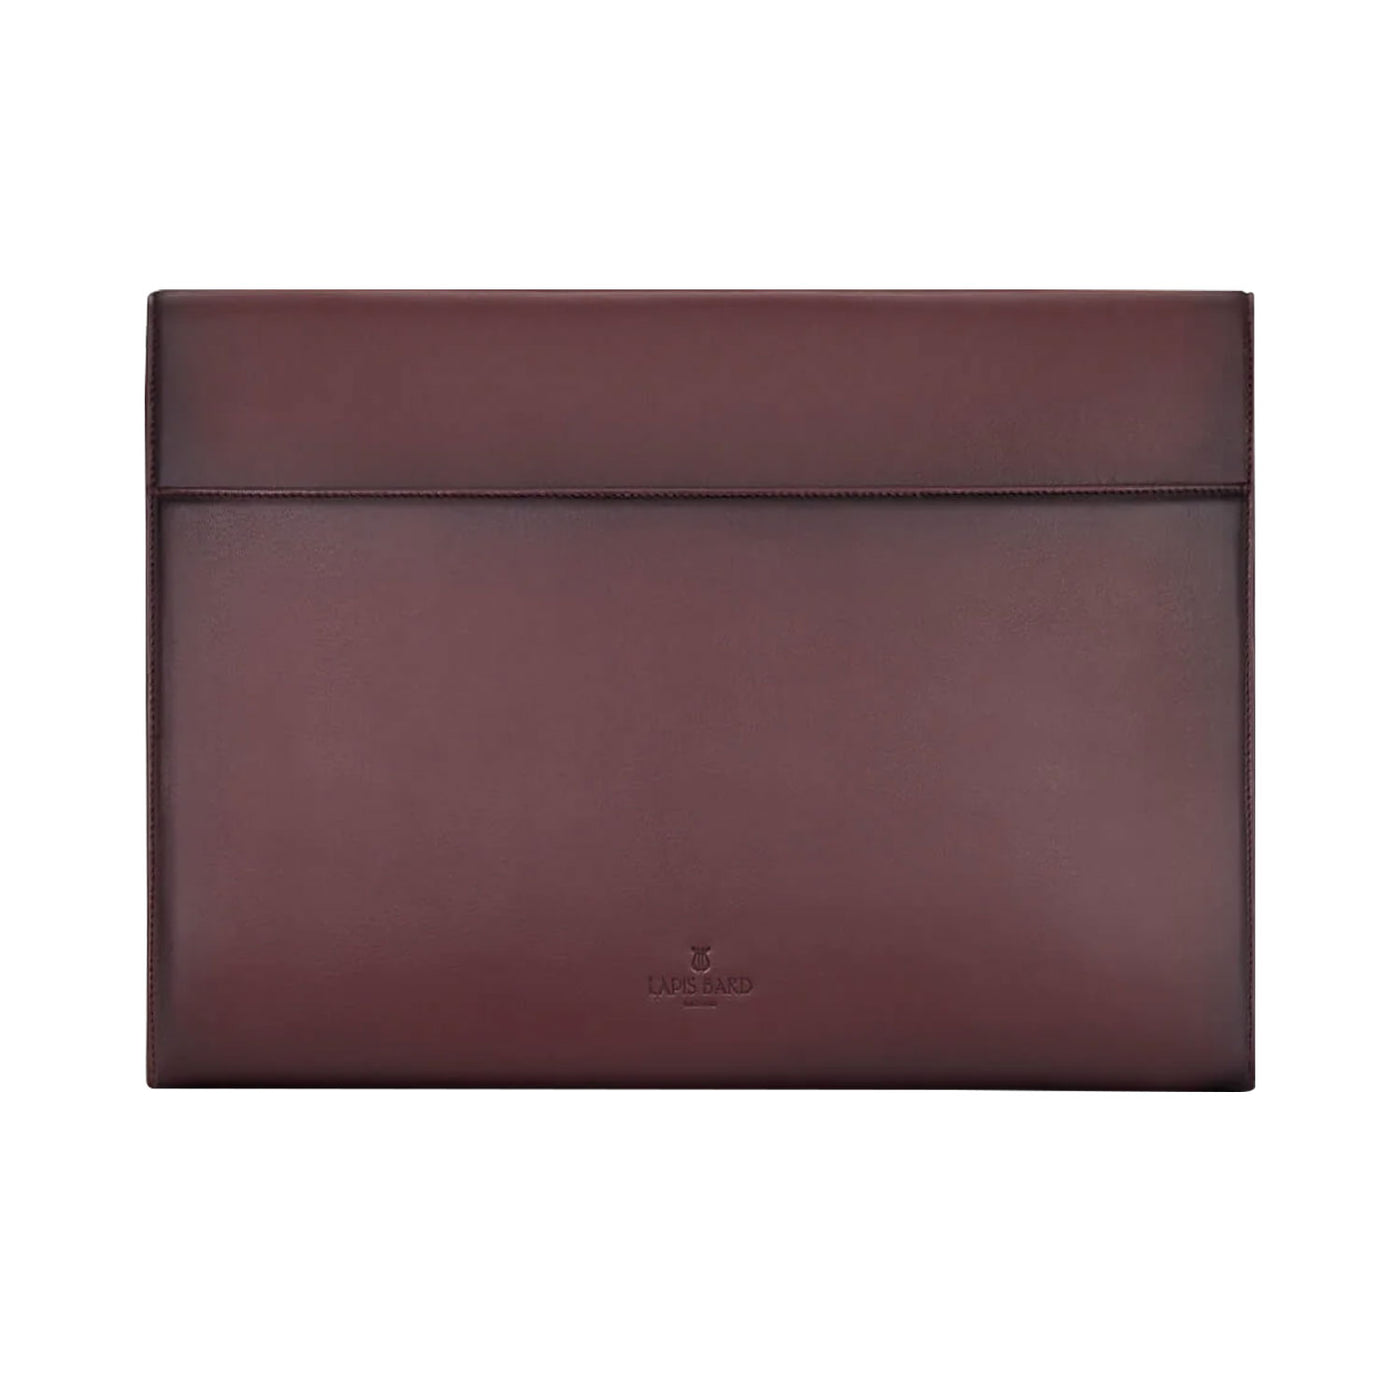 Lapis Bard Ducorium Bexley 13inch Laptop Sleeve With Shoulder Strap - Bordeaux 5